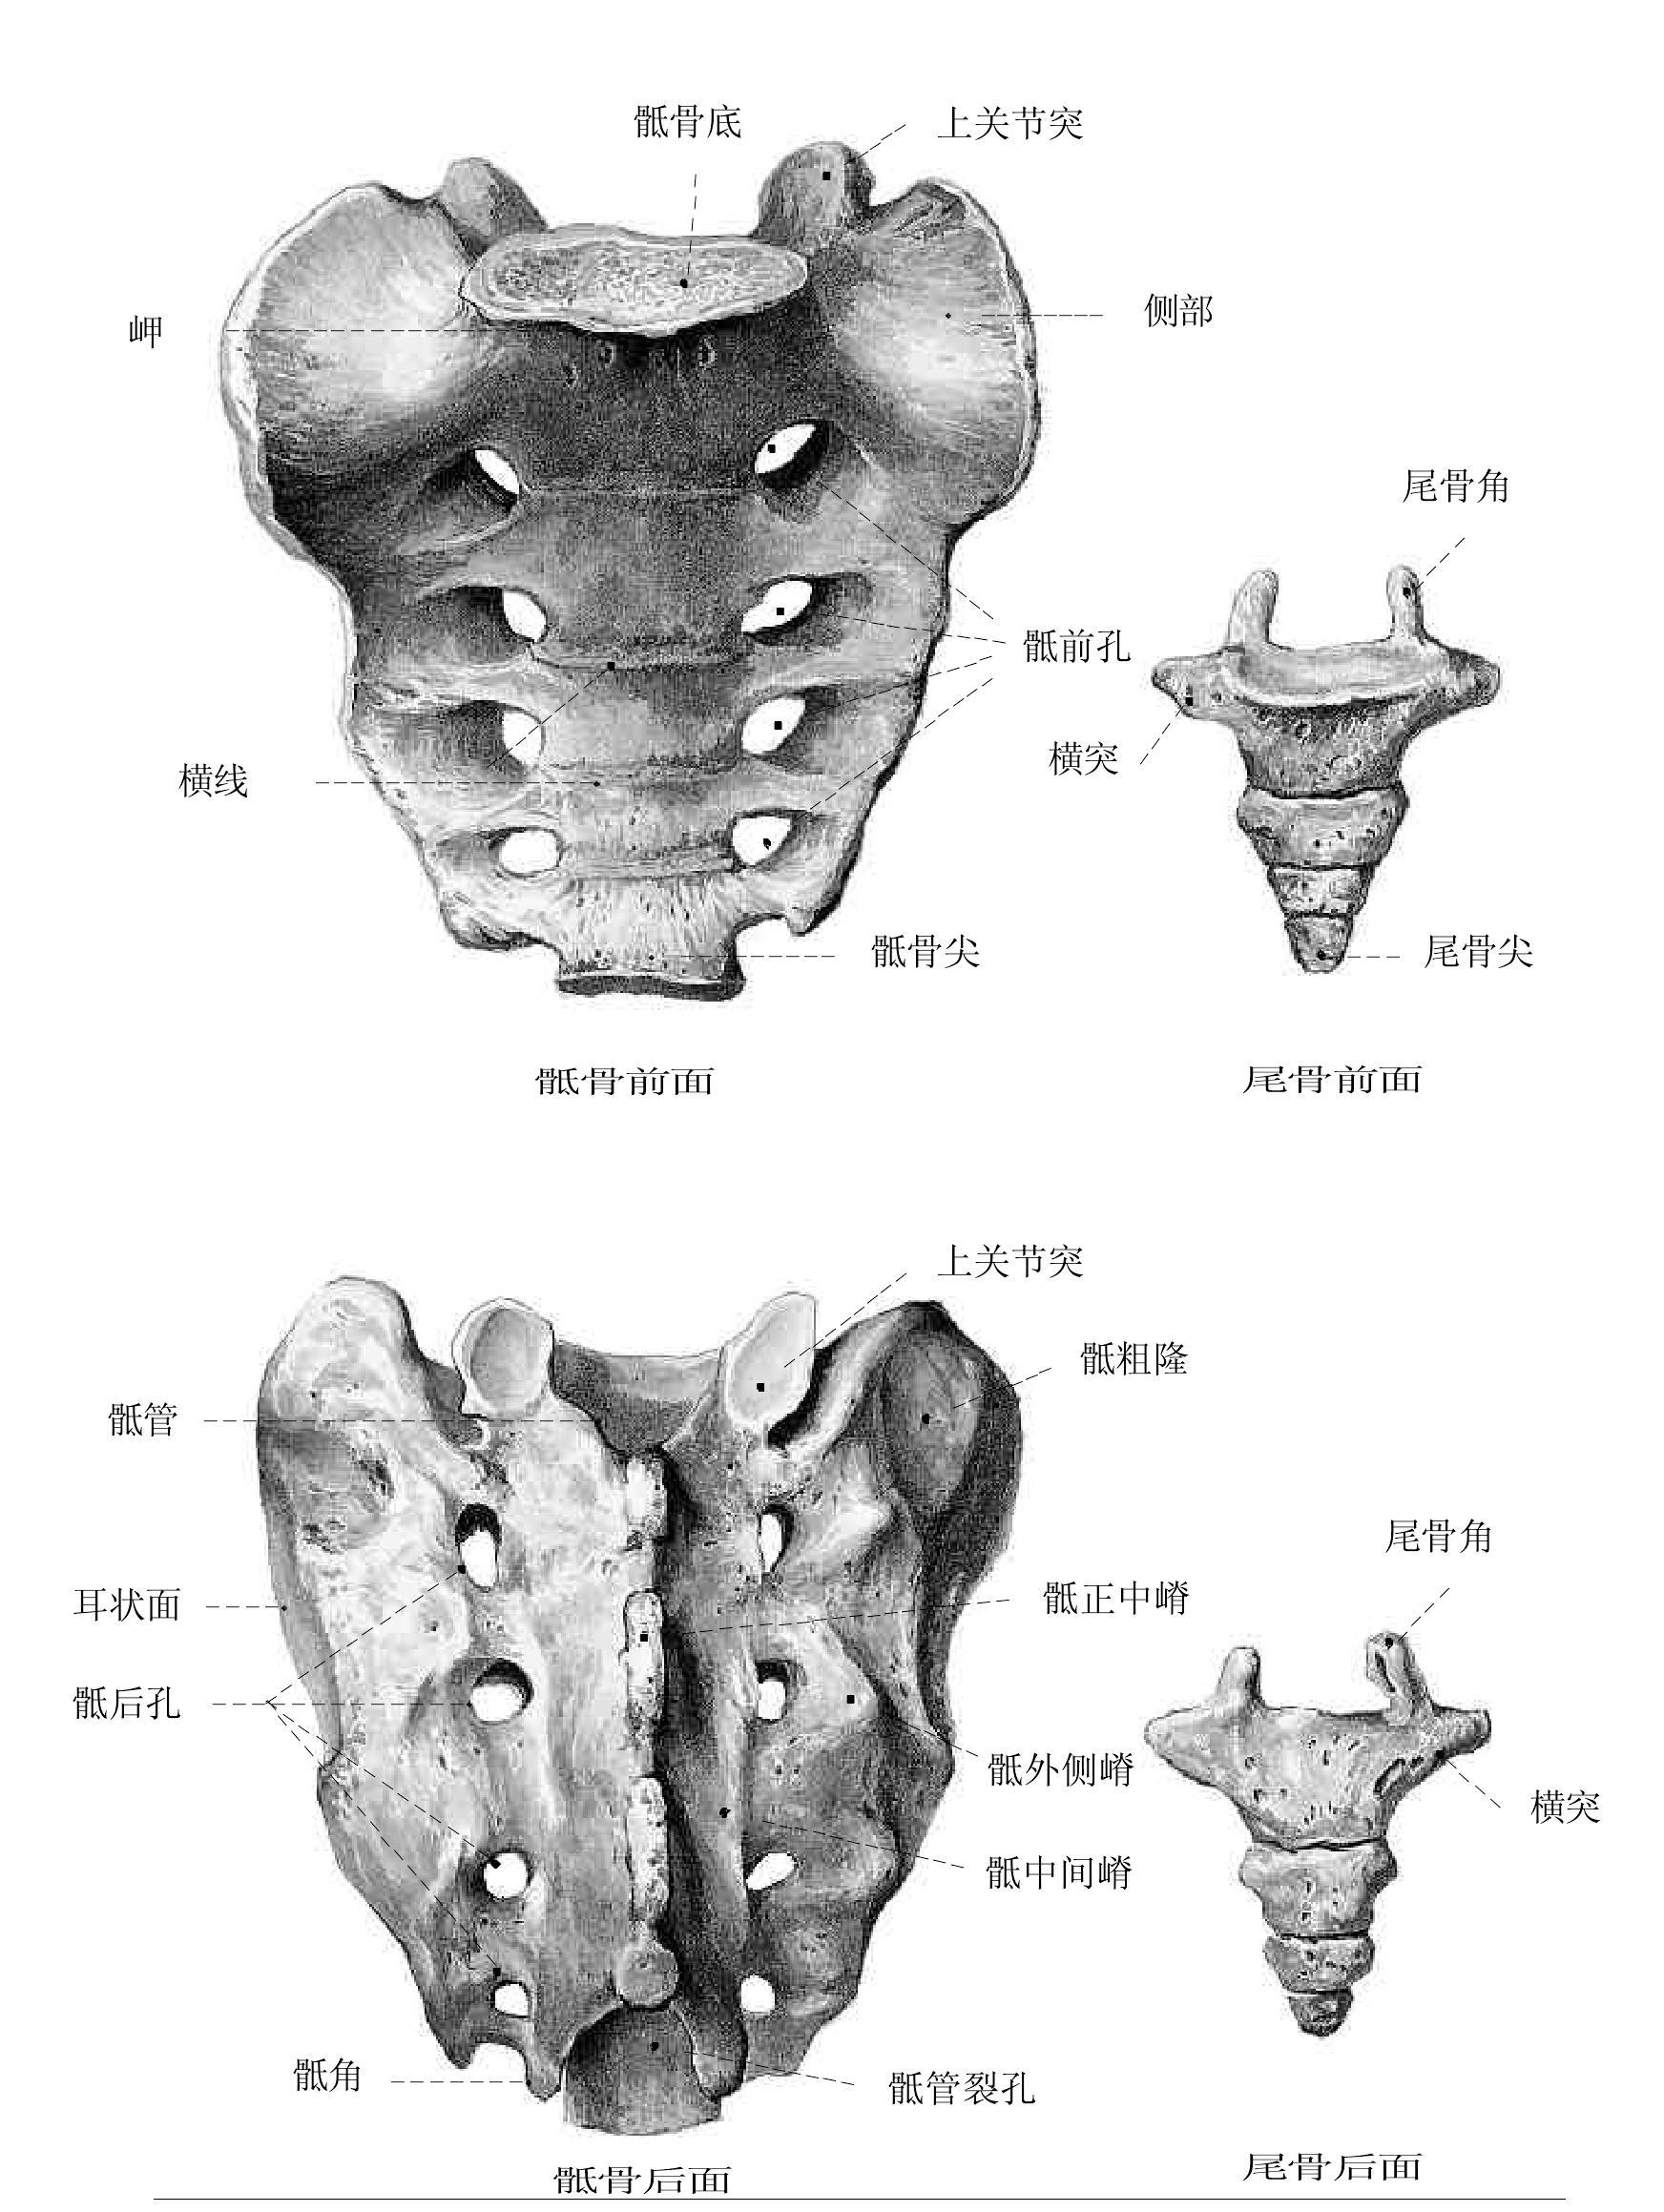 图9.骶骨和尾骨